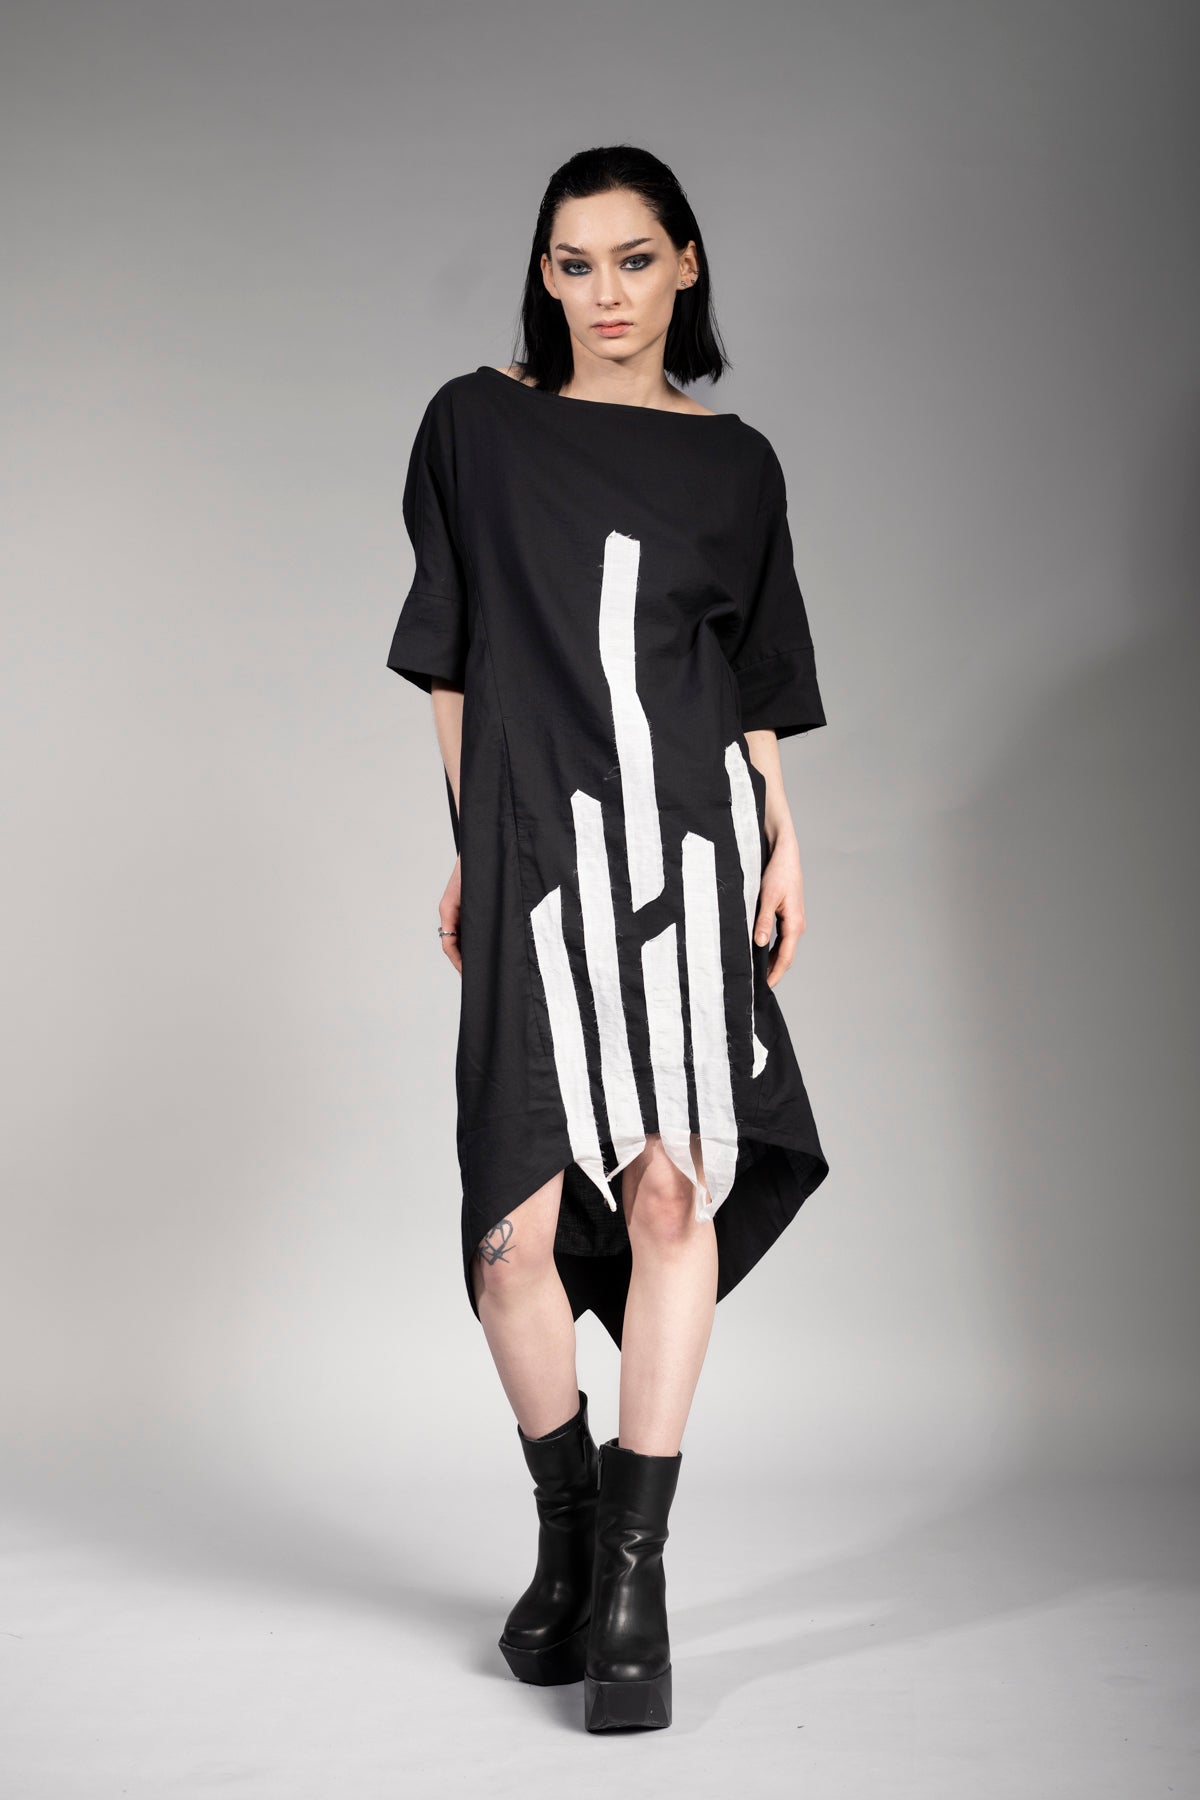 eigensinnig wien | Siouxsie | Extravagantes Grunge Kleid in Schwarz